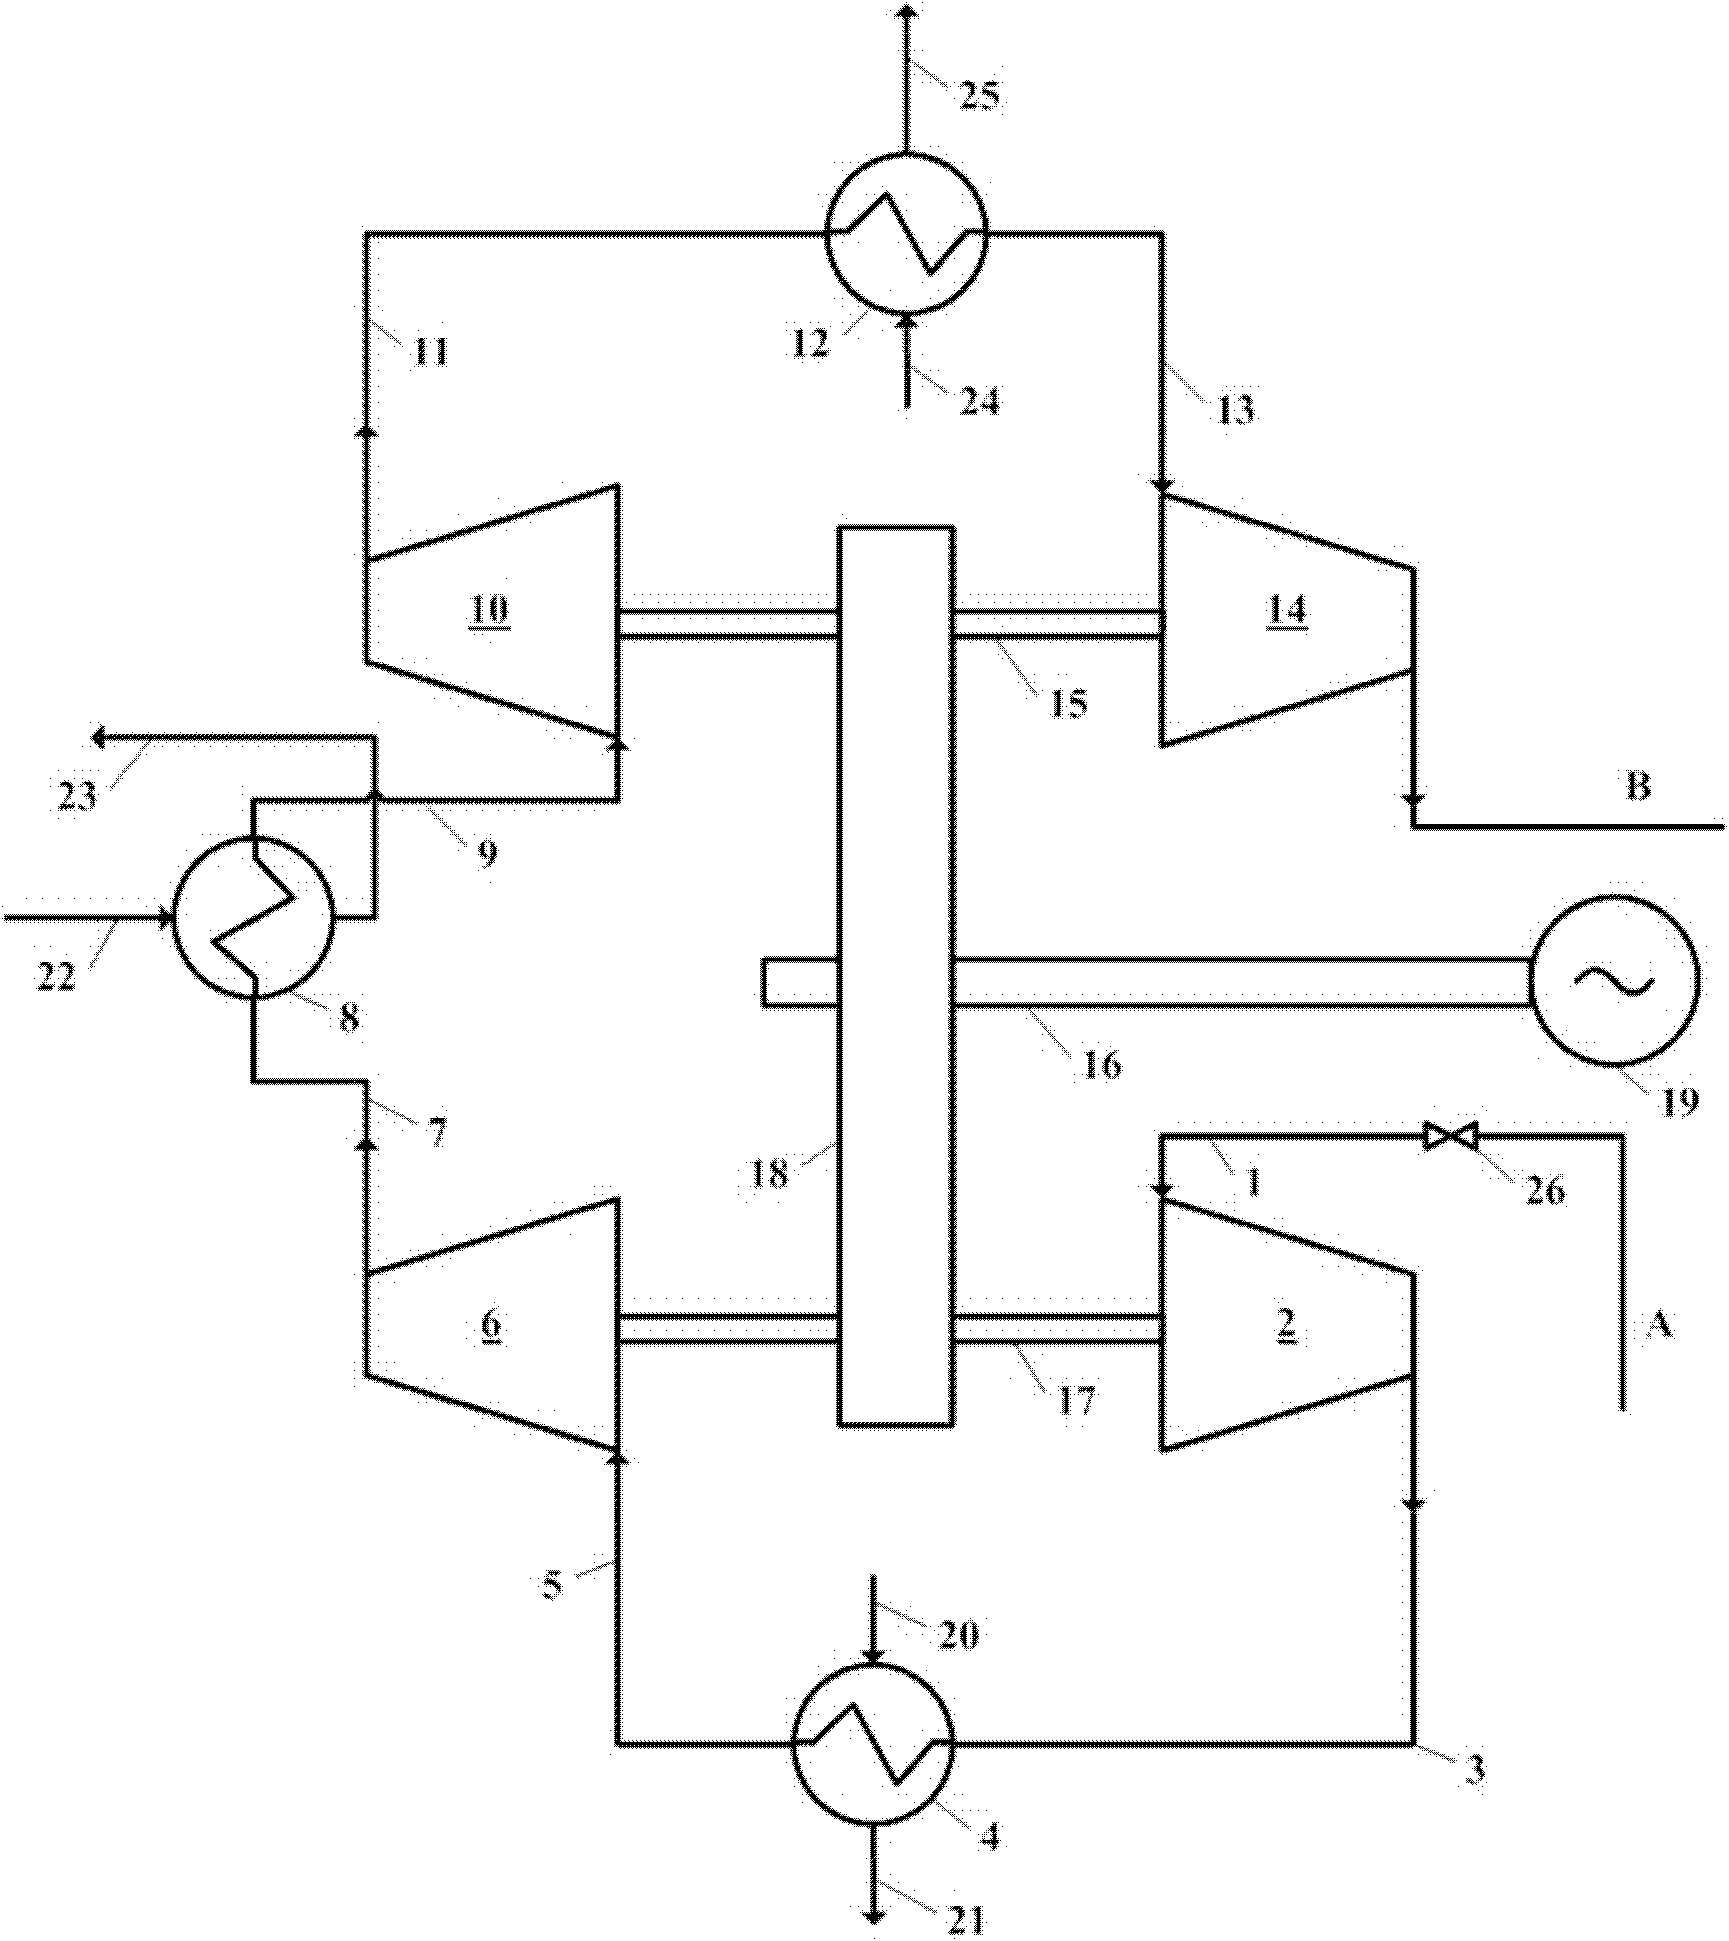 Multilevel centripetal turbine system